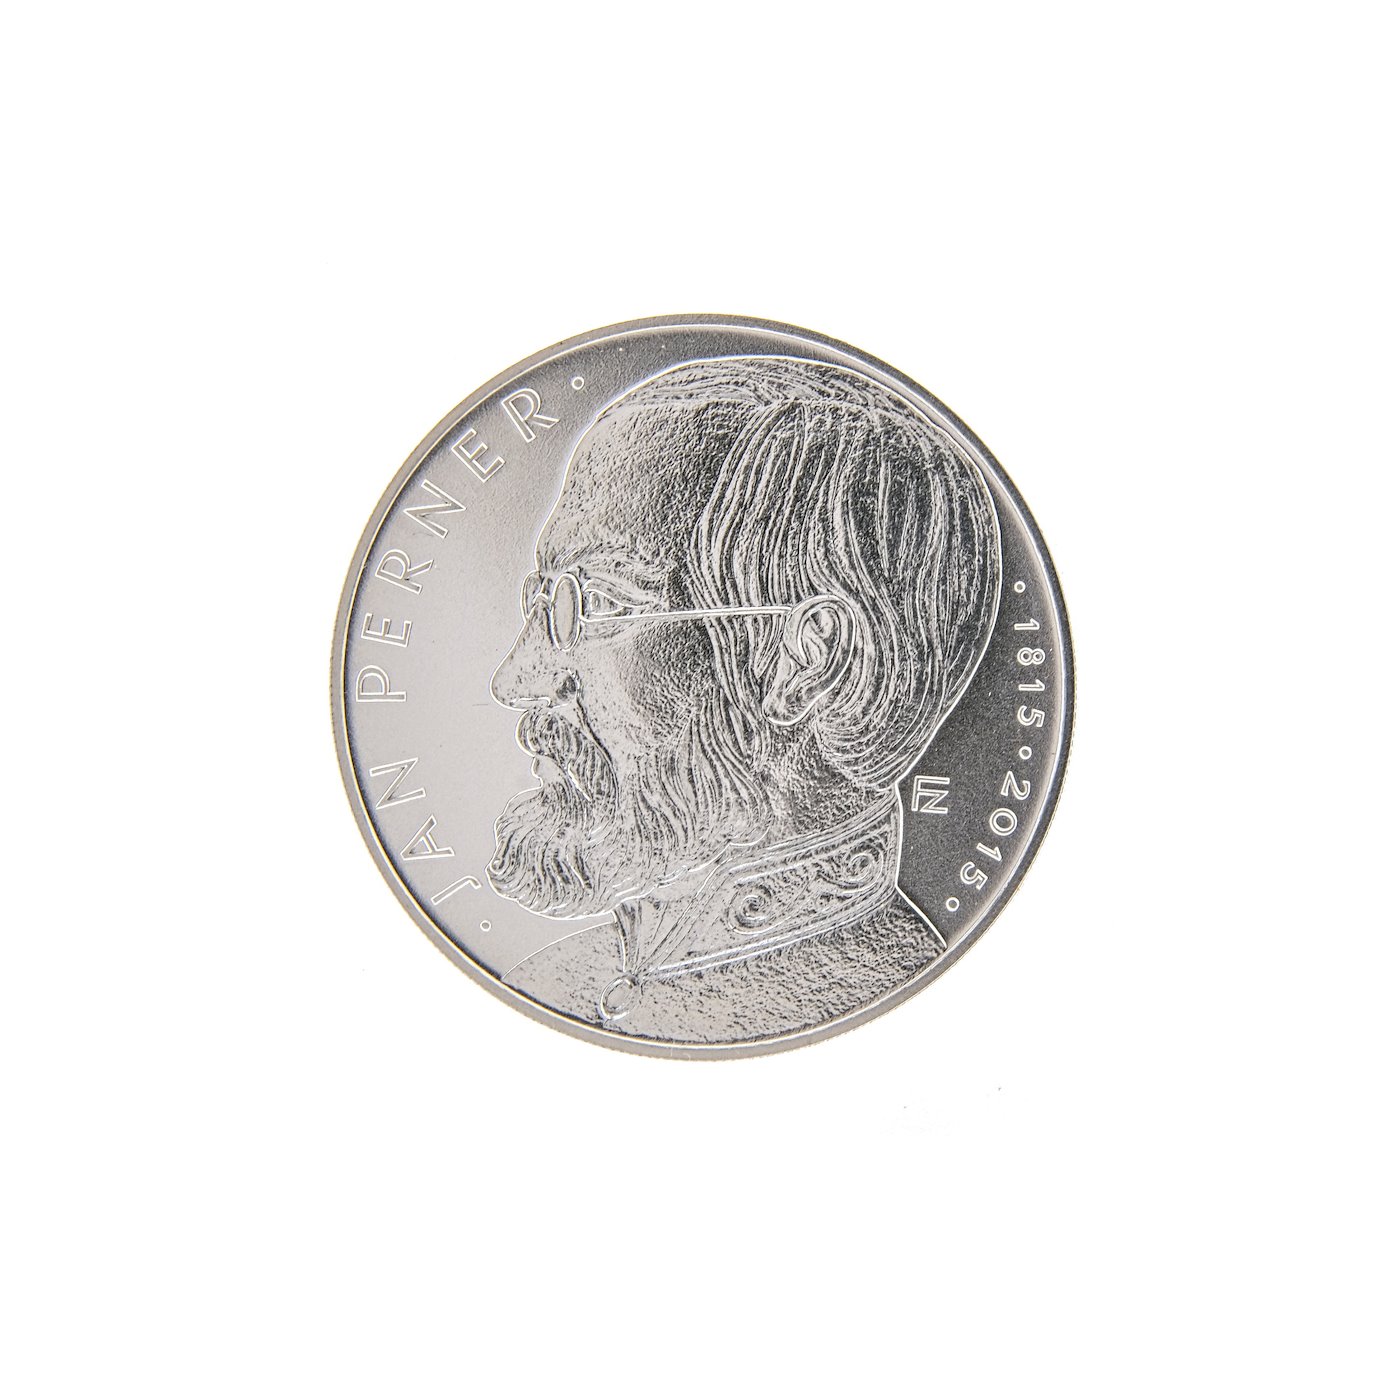 Mince - Konvolut 4 stříbrných investičních mincí, stříbro 1x 925/1000, 3x 900/1000. Hrubá hmotnost 4x 13g